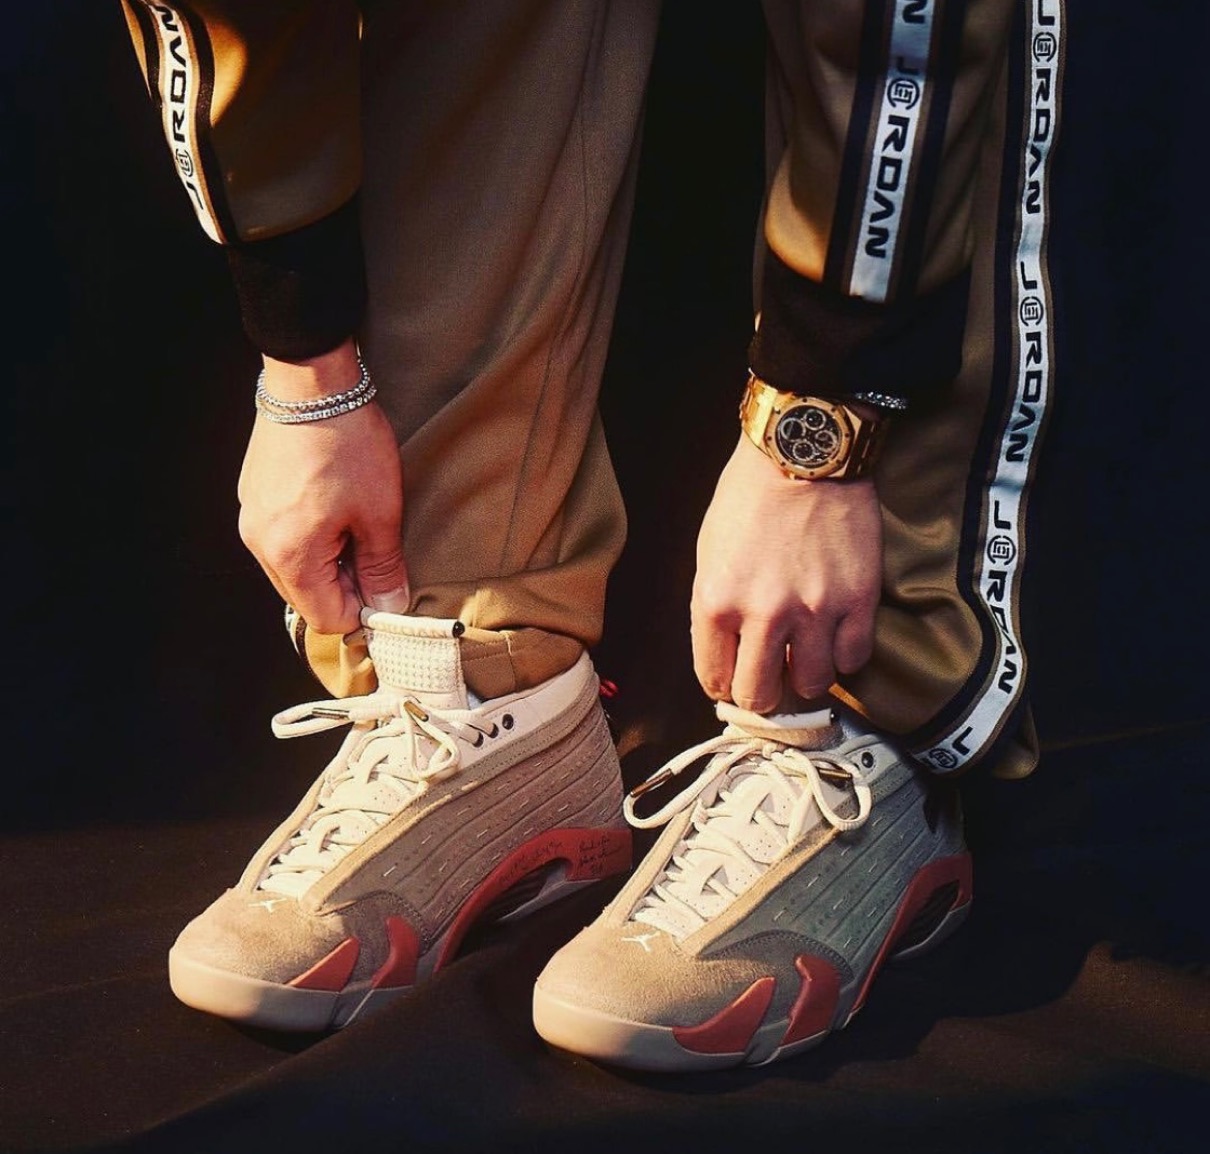 Clot × Nike】Air Jordan 35 “Warrior Jade” & 14 Low “Terracotta”が 